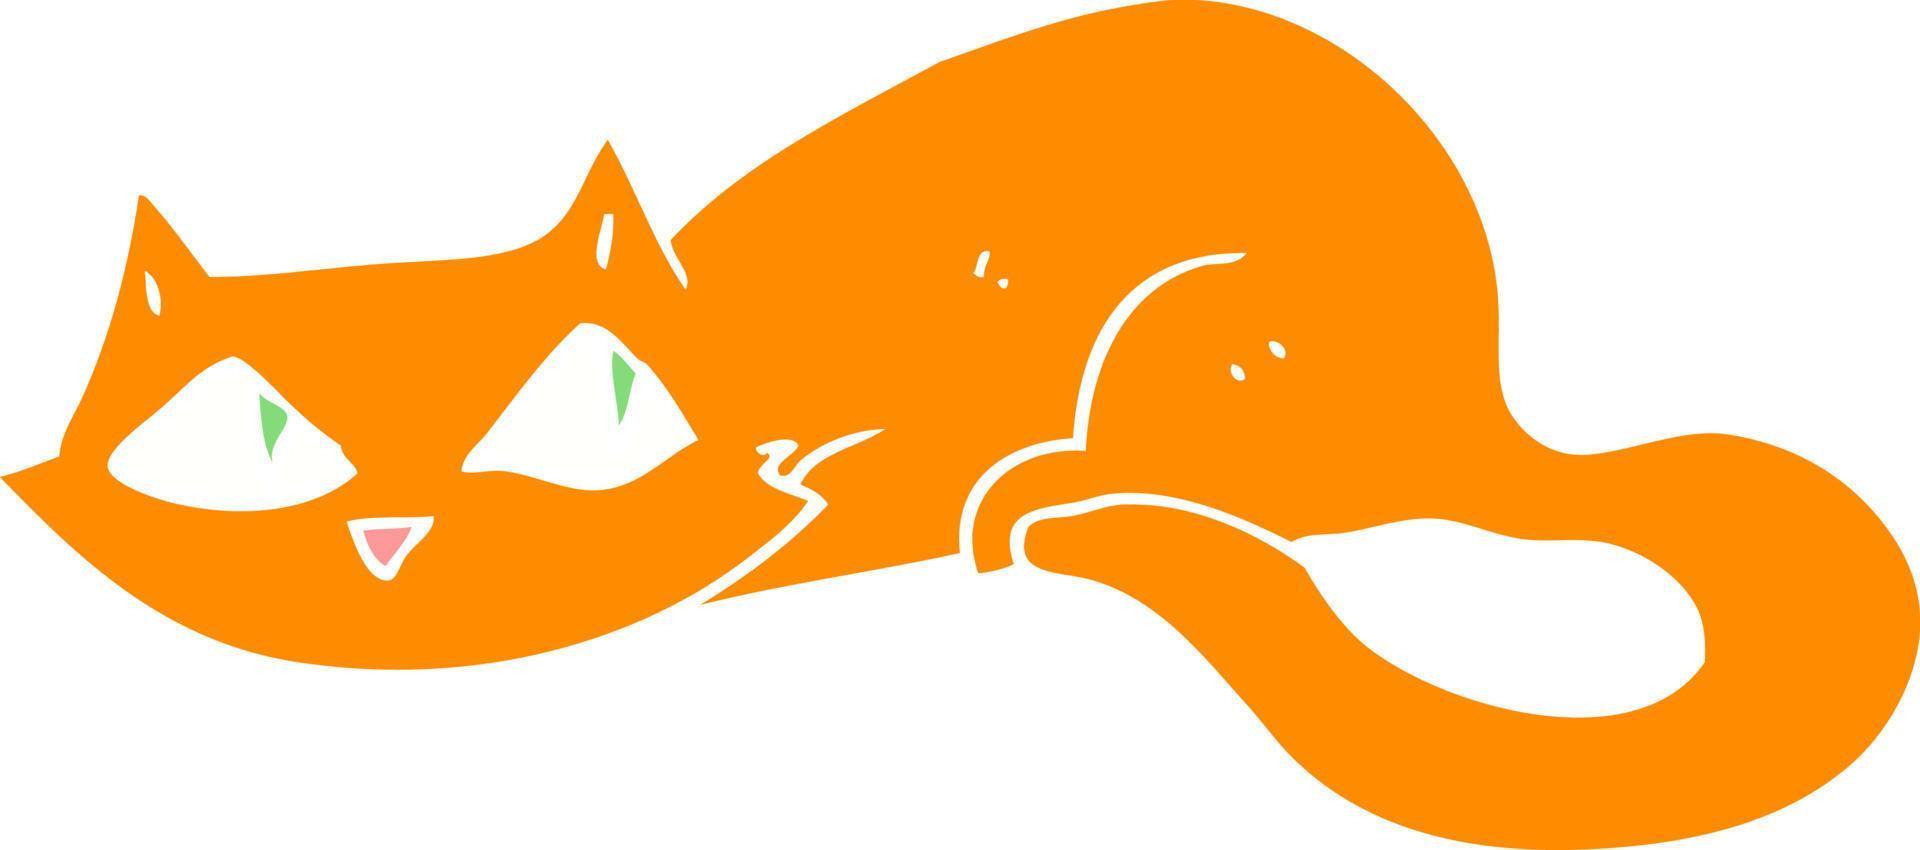 illustration en couleur plate d'un chat de dessin animé vecteur